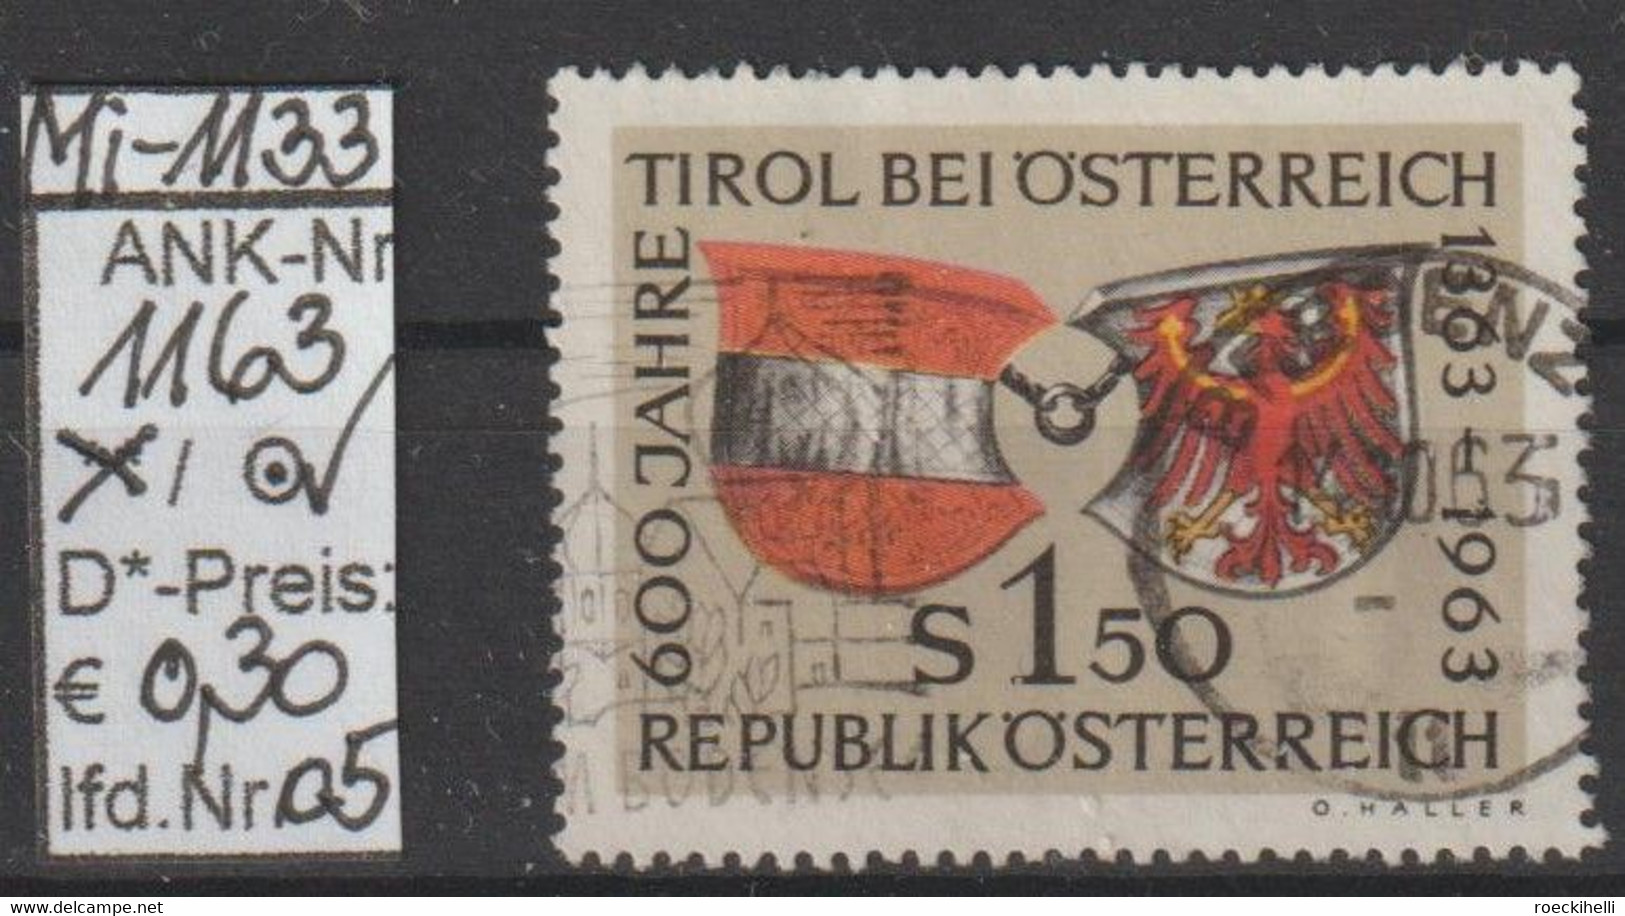 1963 - ÖSTERREICH -  SM  "600 Jahre Tirol Bei Österreich" S 1,50 Mehrf. -  O  Gestempelt - Siehe Scan (1163o 05     At) - Used Stamps